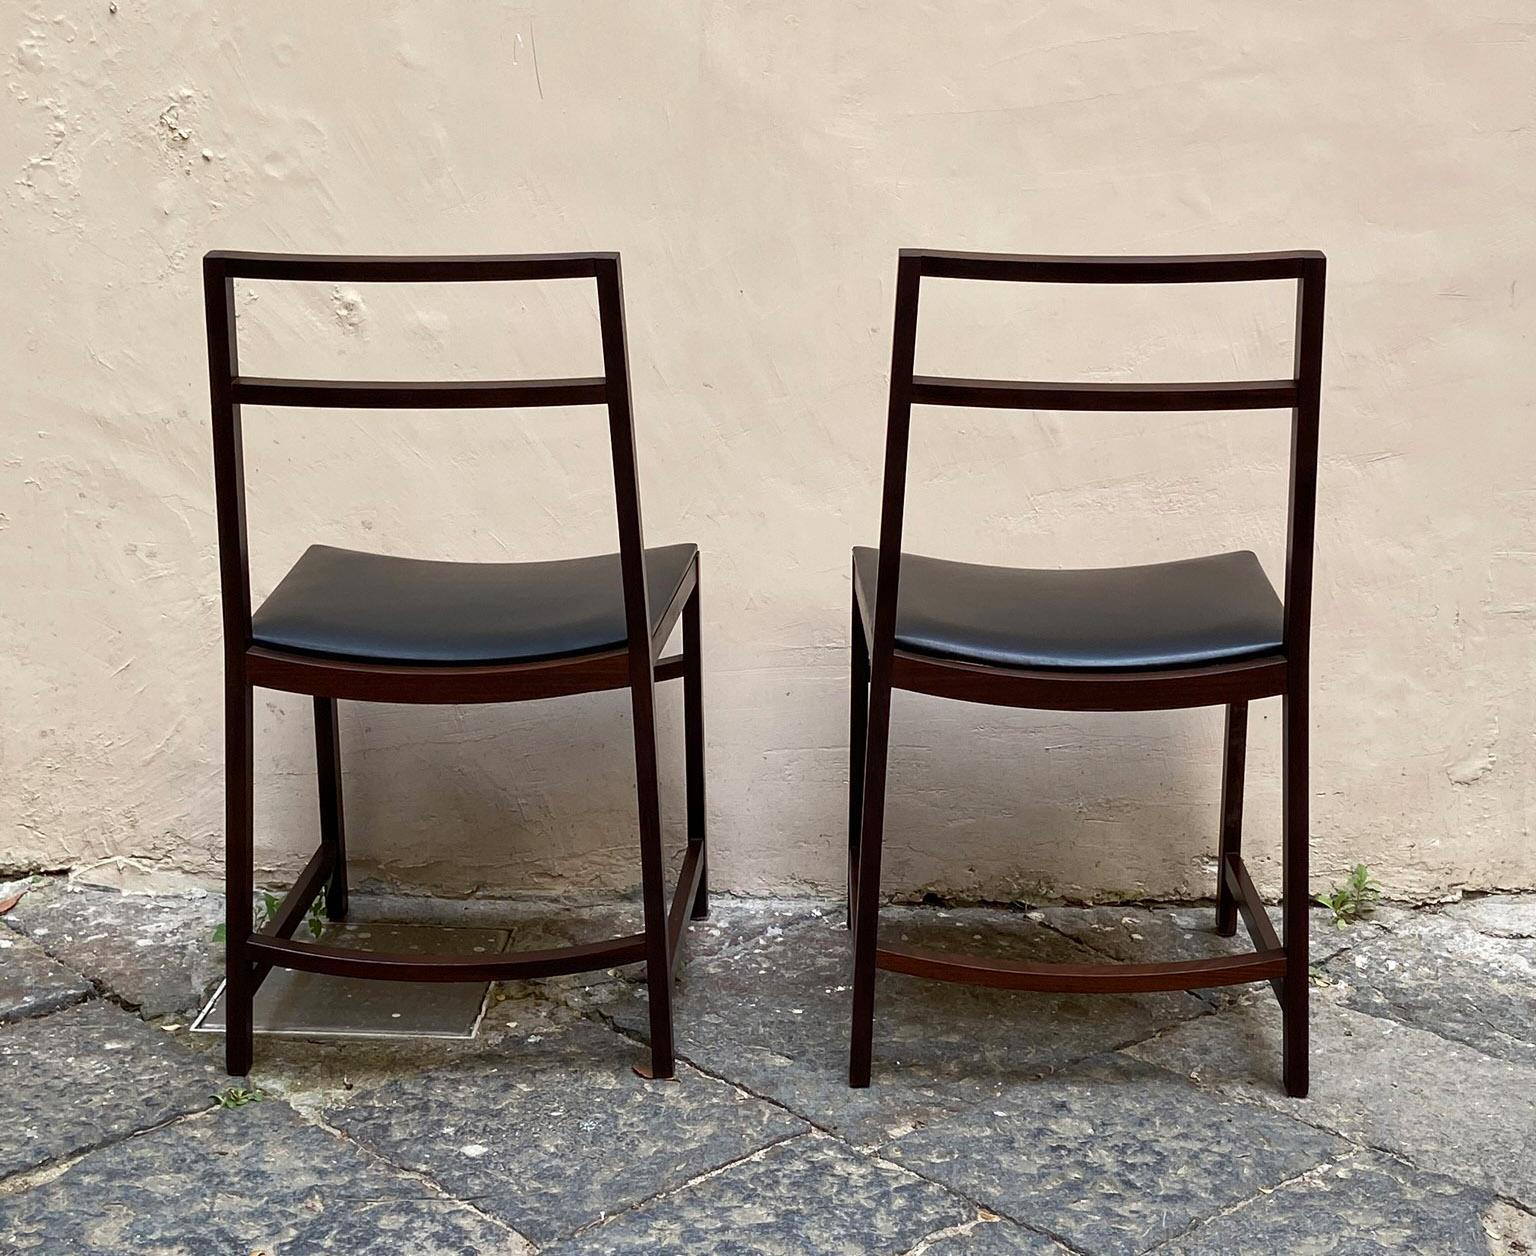 renato chairs